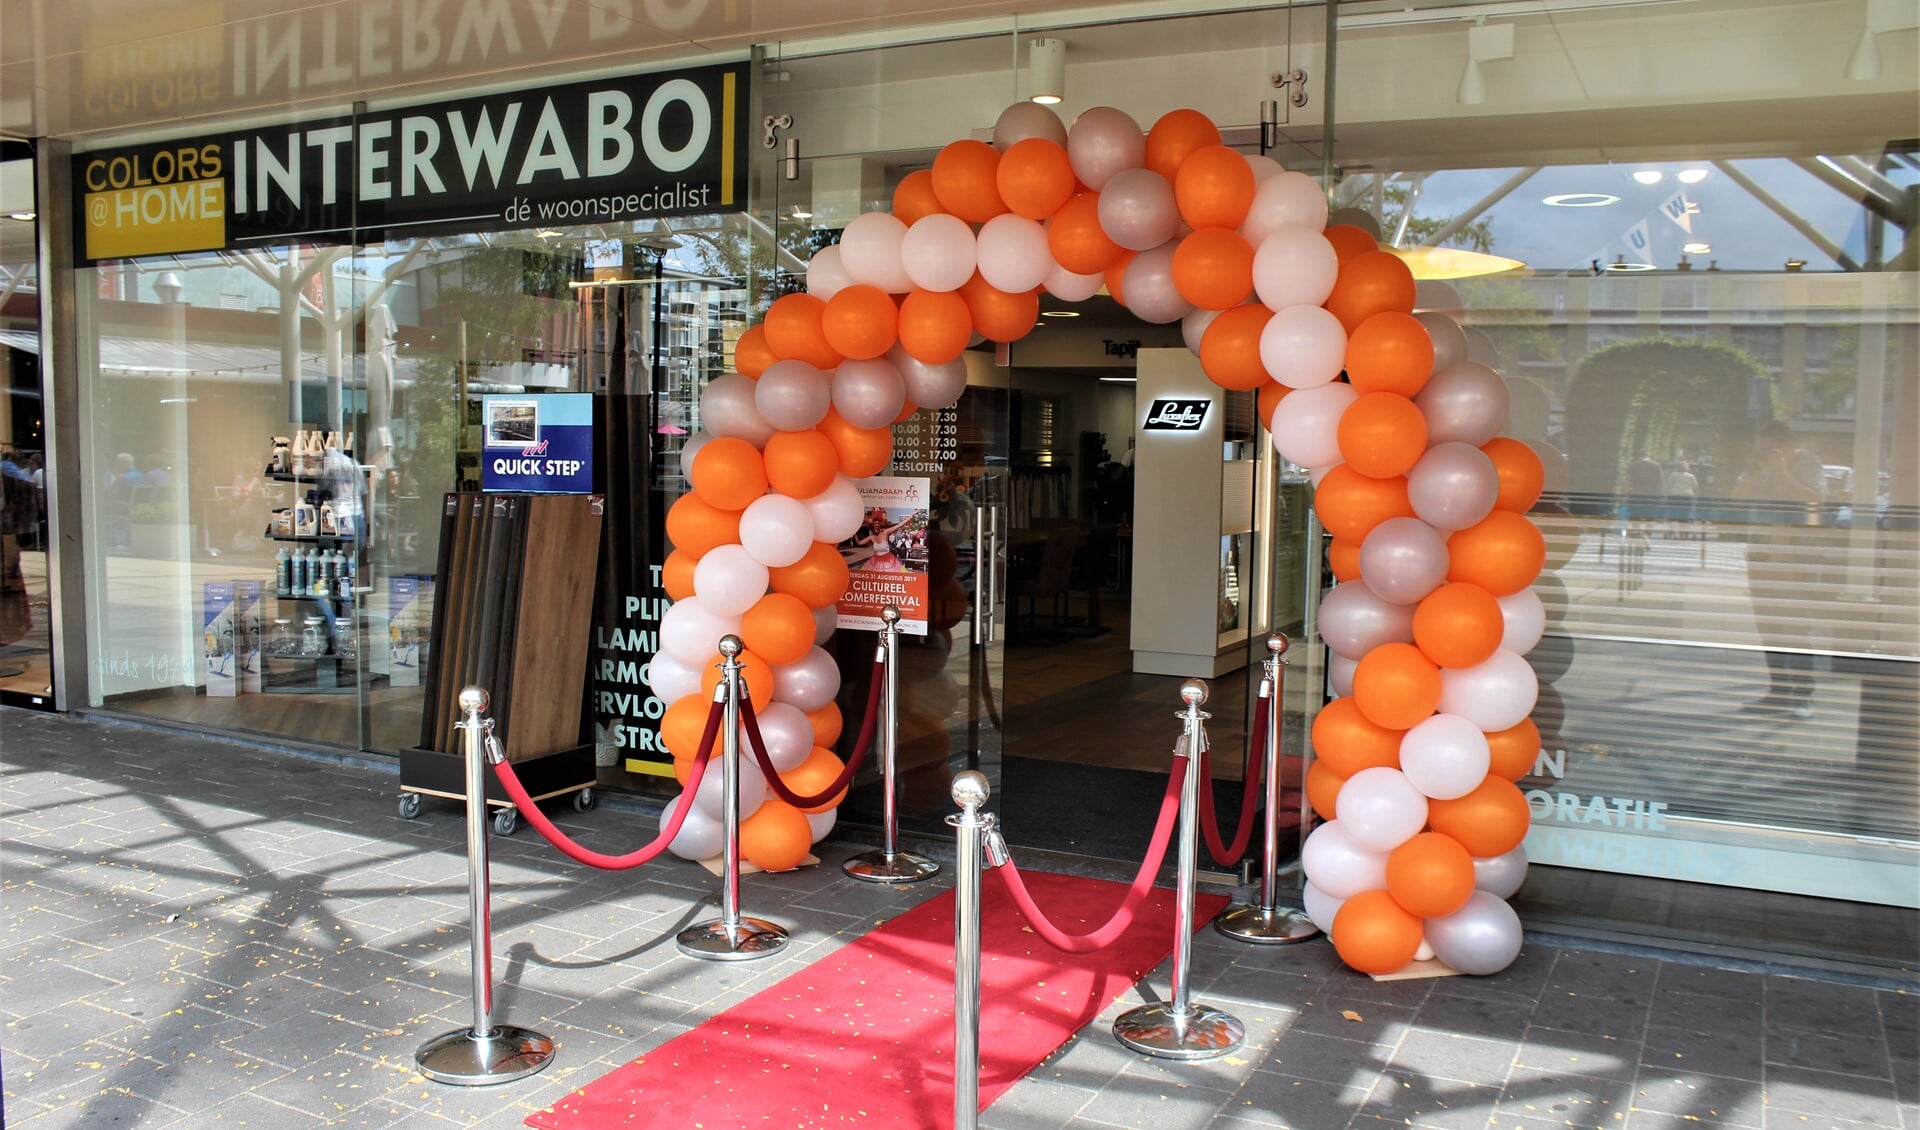 Tijdens het Cultureel Zomer Festival werd de nieuwe winkel van Interwabo officieel geopend en stond er een fleurige ballonnenboog voor de ingang van de winkel (foto: DJ).